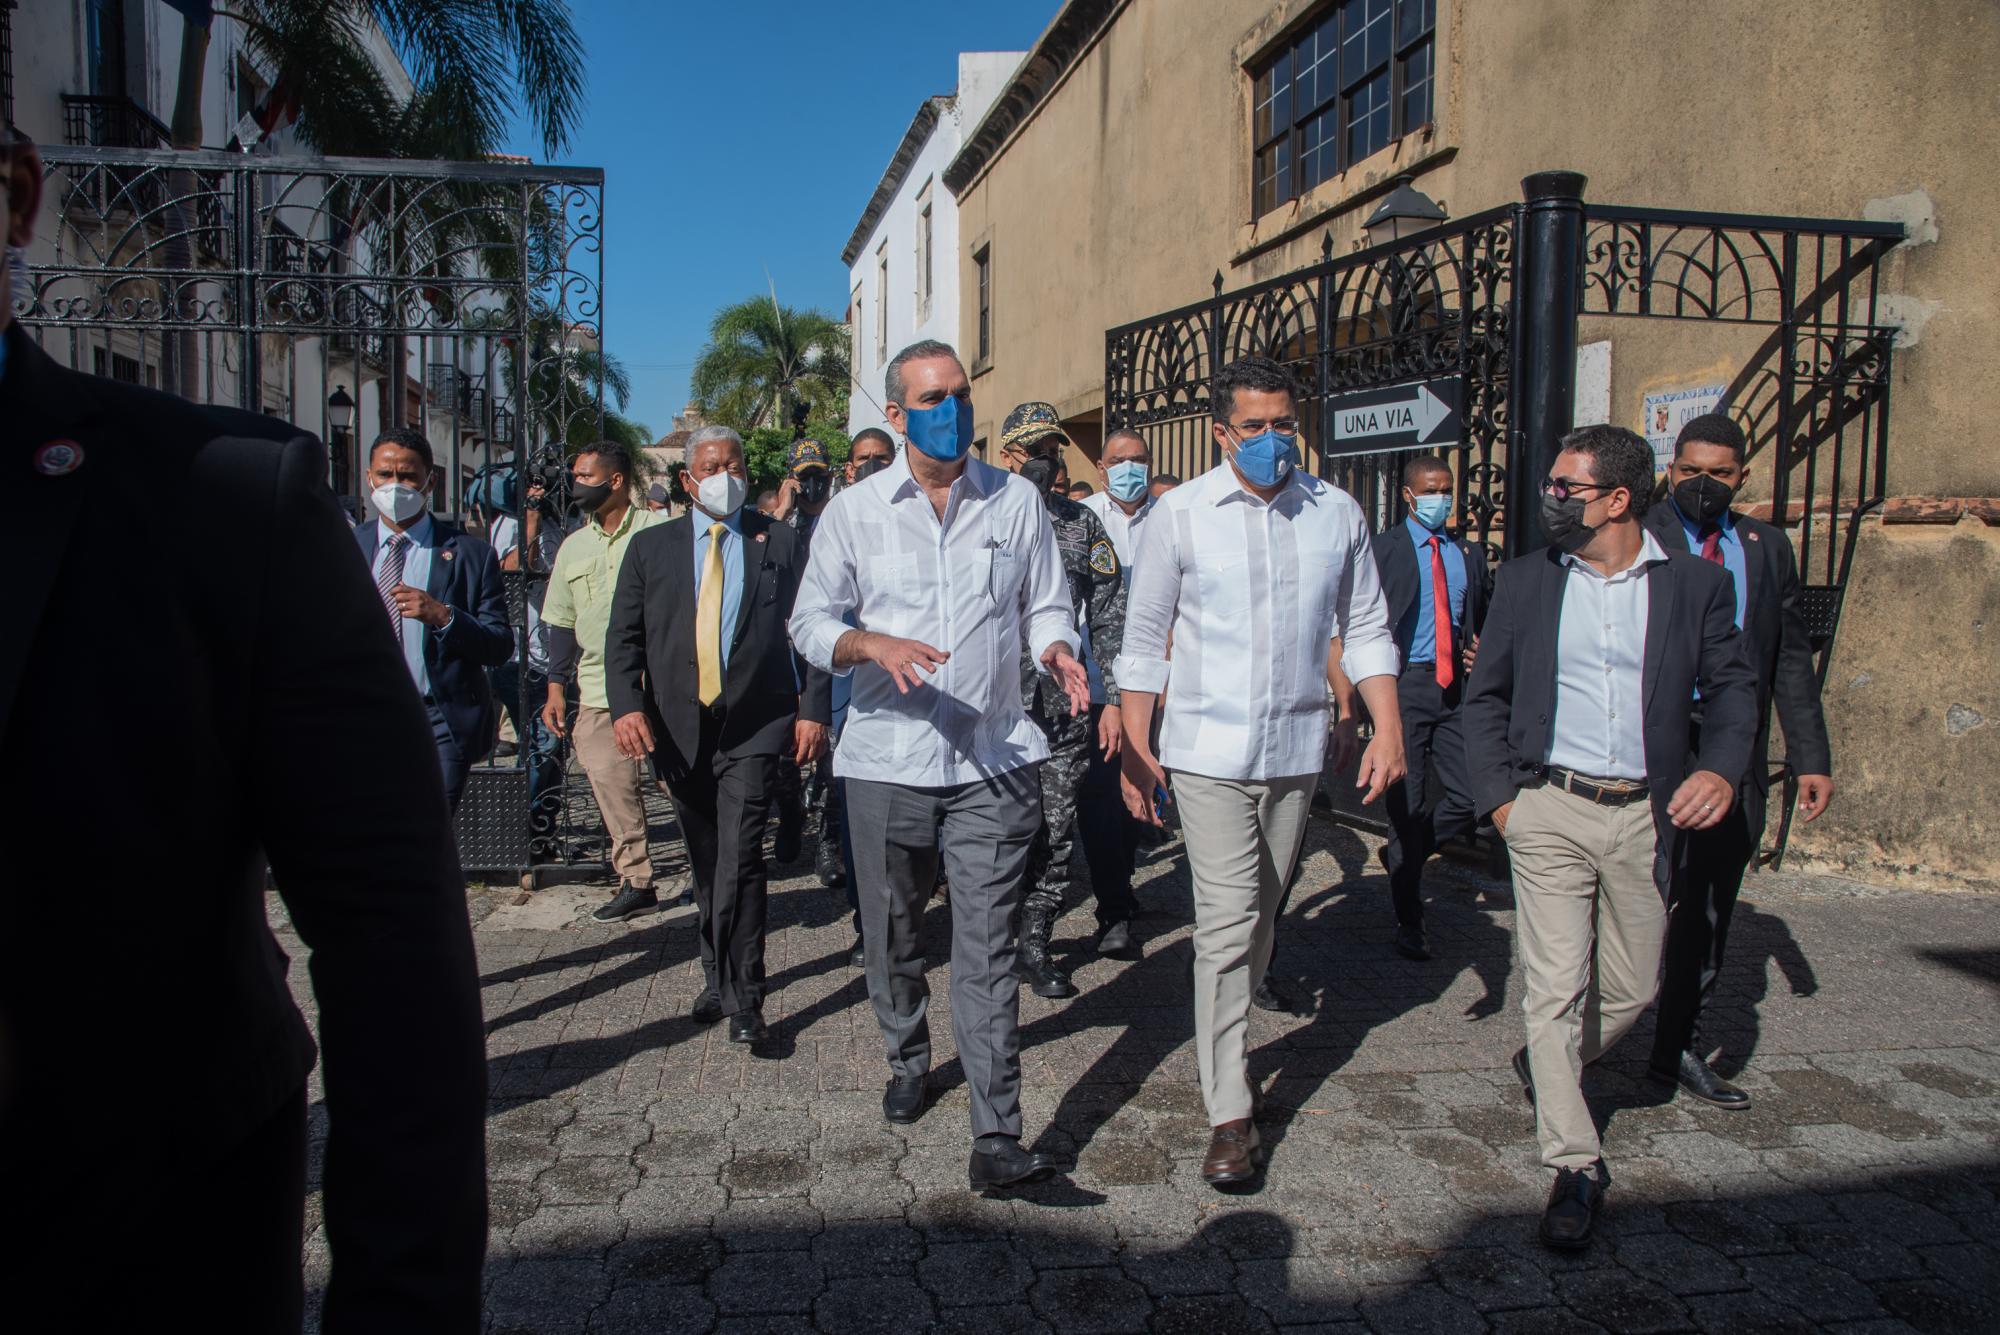 El presidente de la República Dominicana, Luis Abinader, destinó buena parte de su agenda a recorrer los espacios de la Ciudad Colonial (Foto: Eddy Vittini)